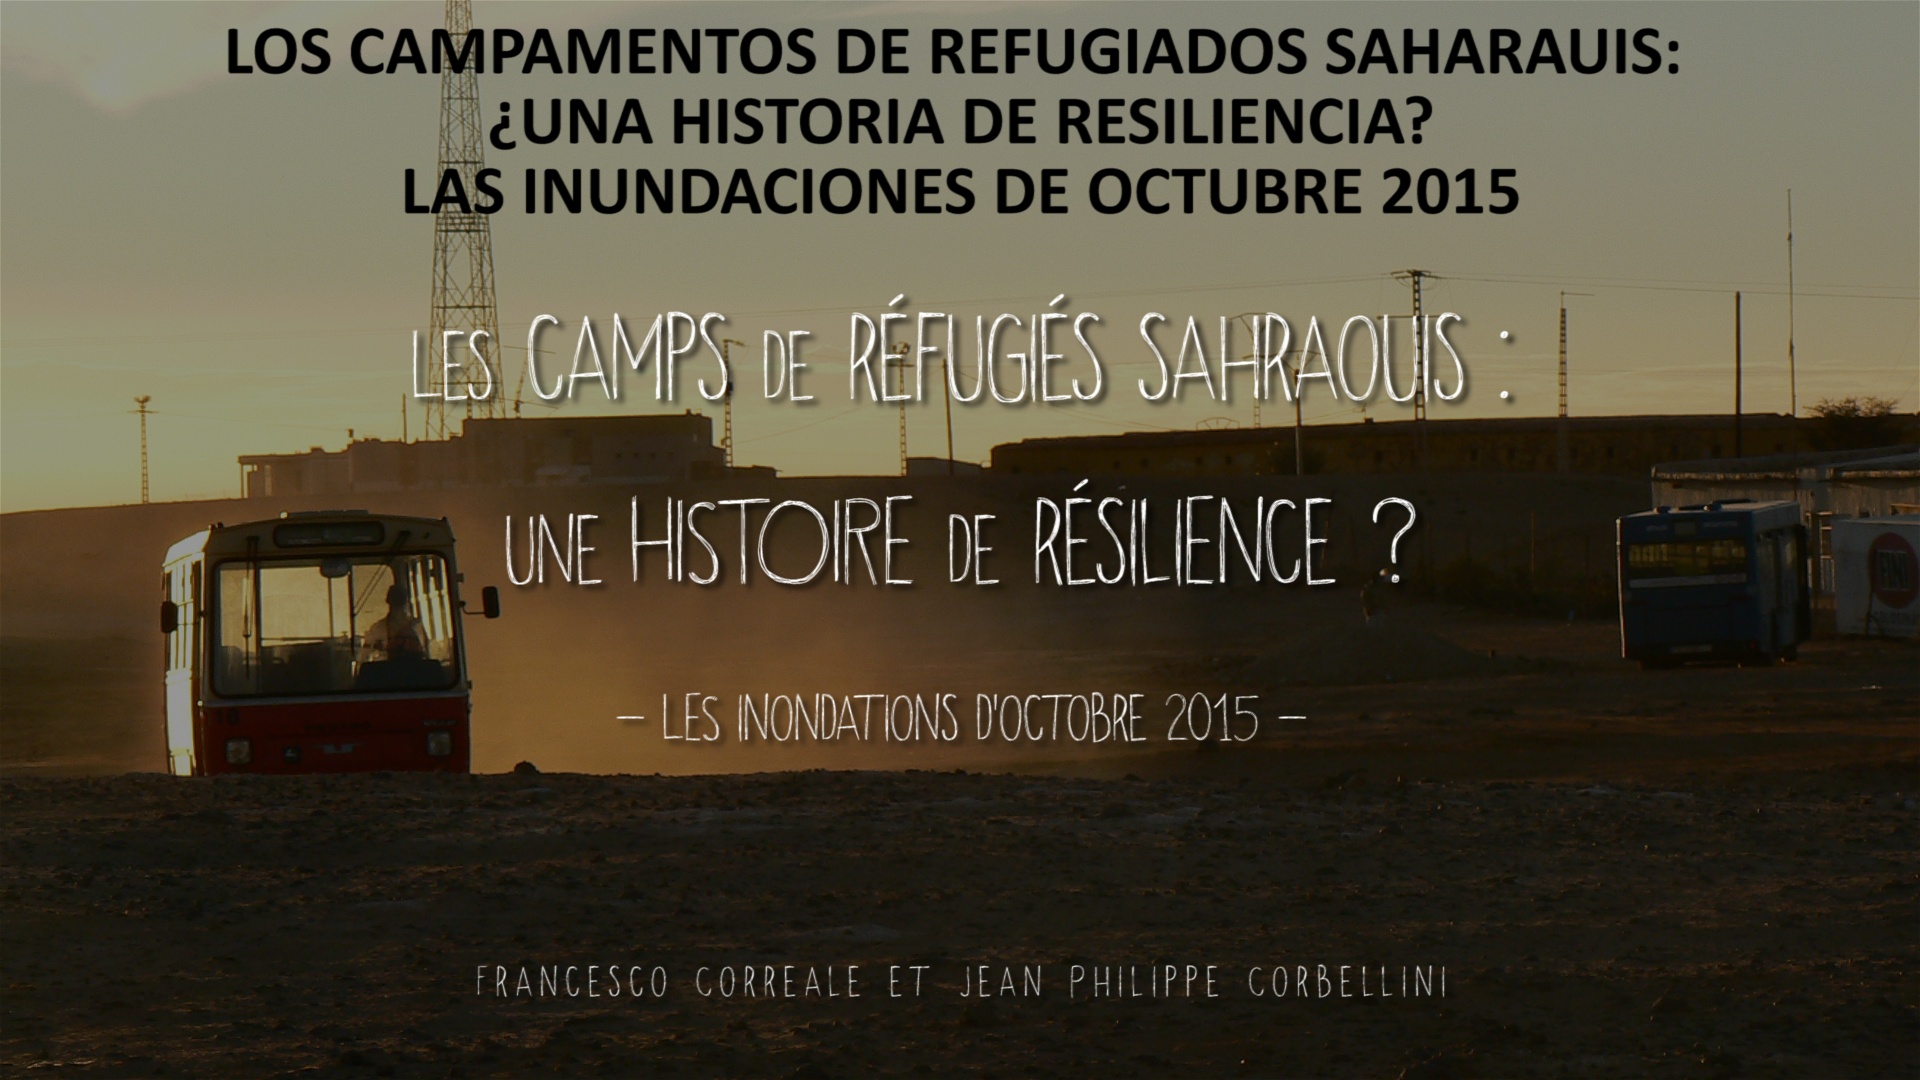 Los campamentos de refugiados saharauis: ¿Una historia de resiliencia?
Las inundaciones de octubre 2015